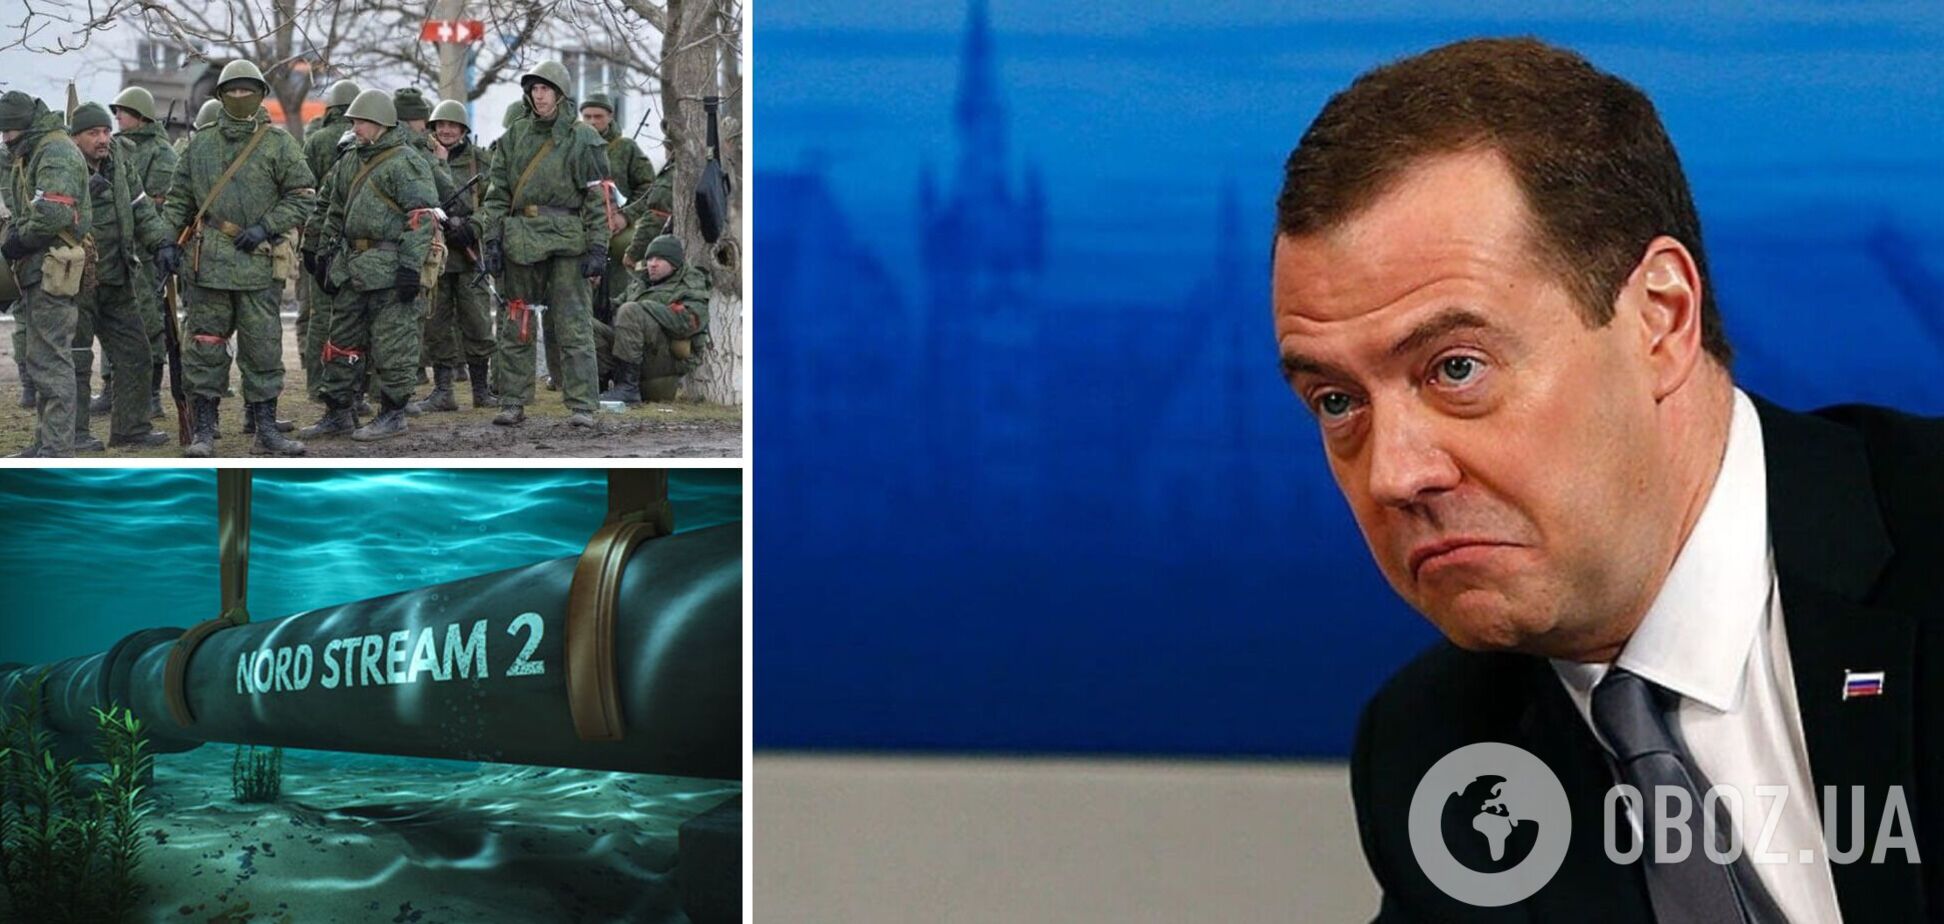 Медведєв після заяв Путіна розмріявся про 'санітарну зону' до Львова і спробував пригрозити Заходу